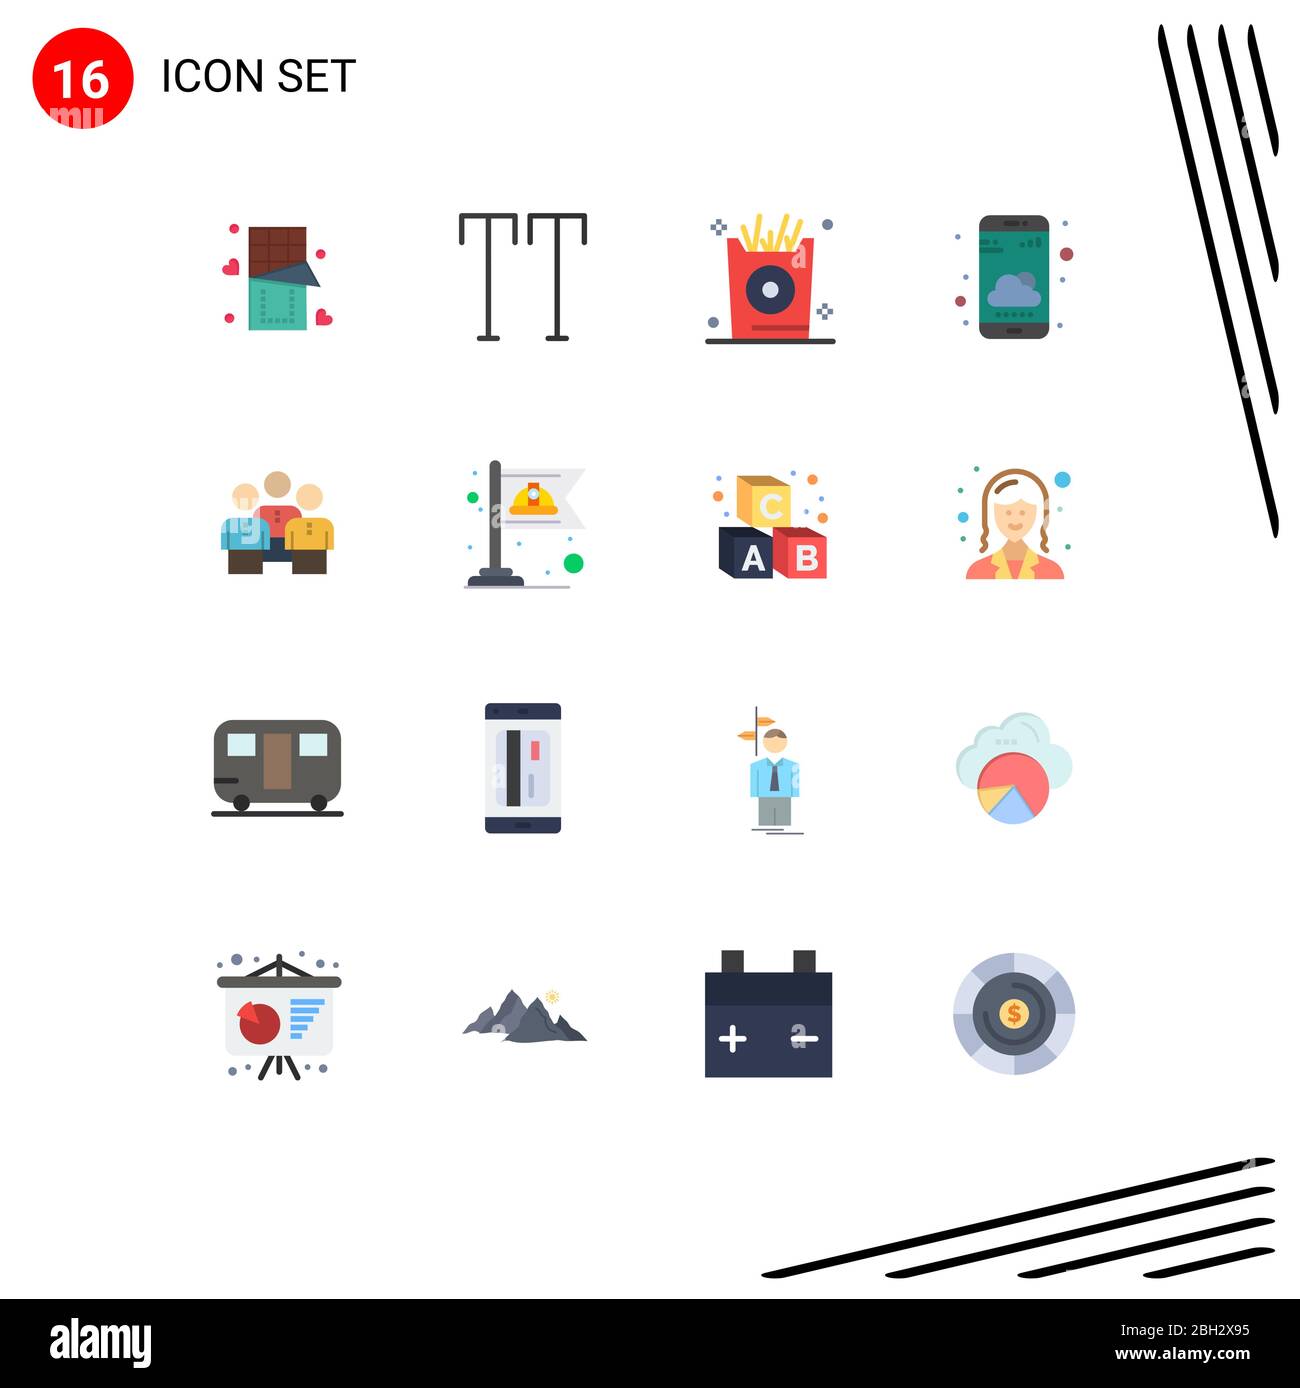 Piktogramm-Set von 16 einfachen Flachen Farben der Gruppe, Freunde, Urlaub, Wetter-App, Smartphone editierbar Pack von Creative Vector Design-Elemente Stock Vektor